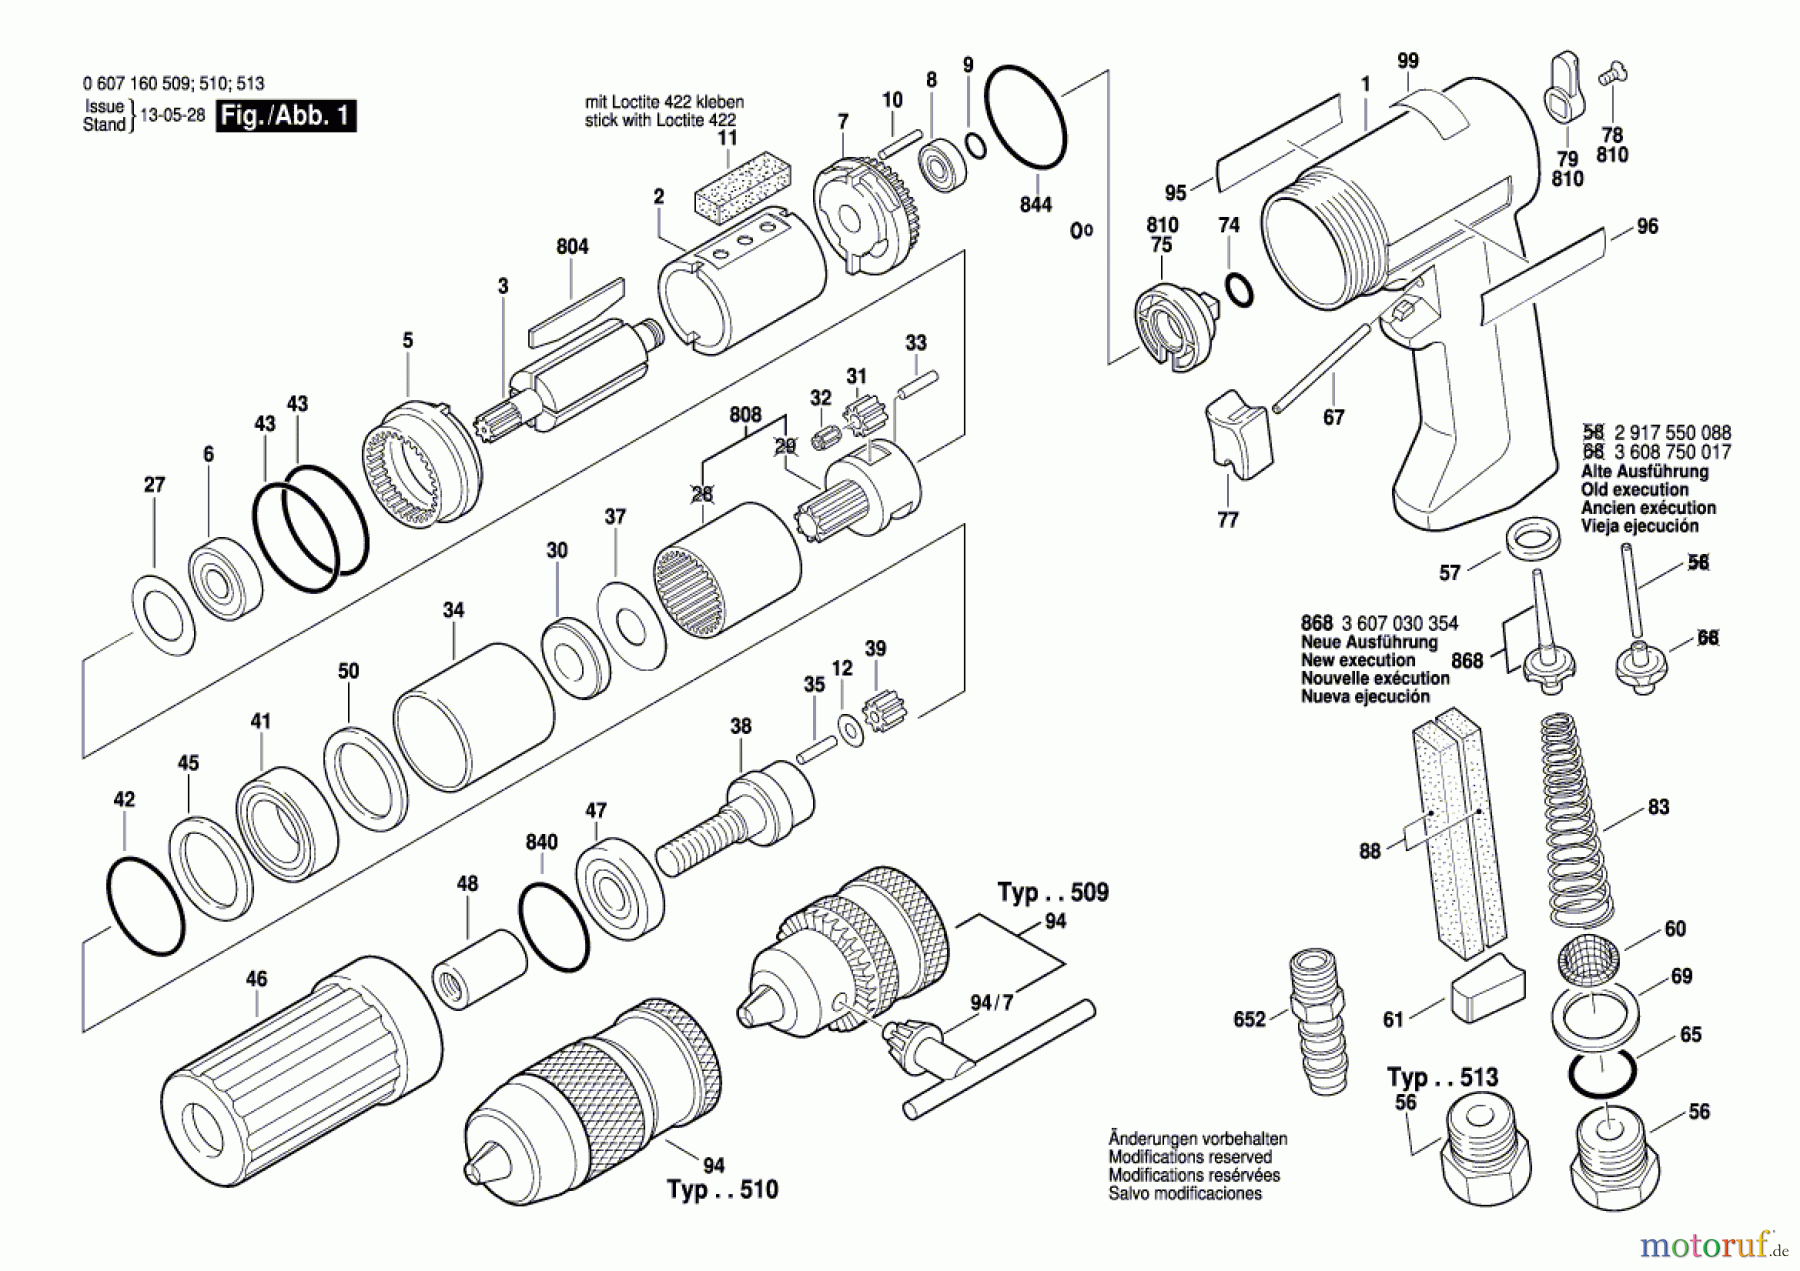  Bosch Werkzeug Pw-Bohrmaschine-Ind 220 WATT-SERIE Seite 1